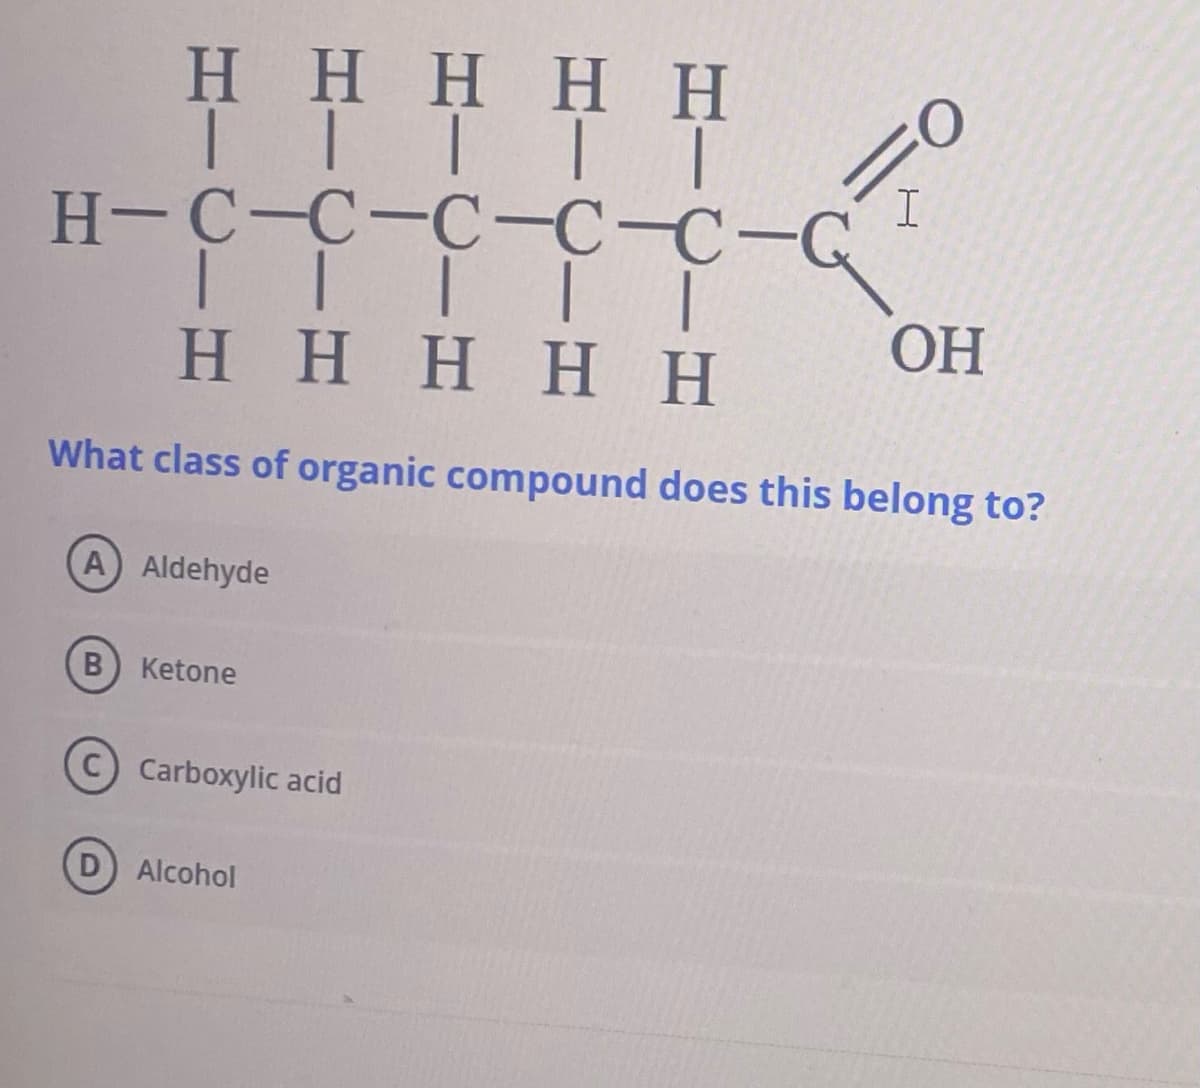 Η Η Η Η Η
ΤΙΤΤΤ
H-C-C-C-CC-G I
| | | |
Η Η Η Η Η
|
OH
What class of organic compound does this belong to?
A) Aldehyde
Β
Ketone
Carboxylic acid
Alcohol
ά
Ὁ
Η